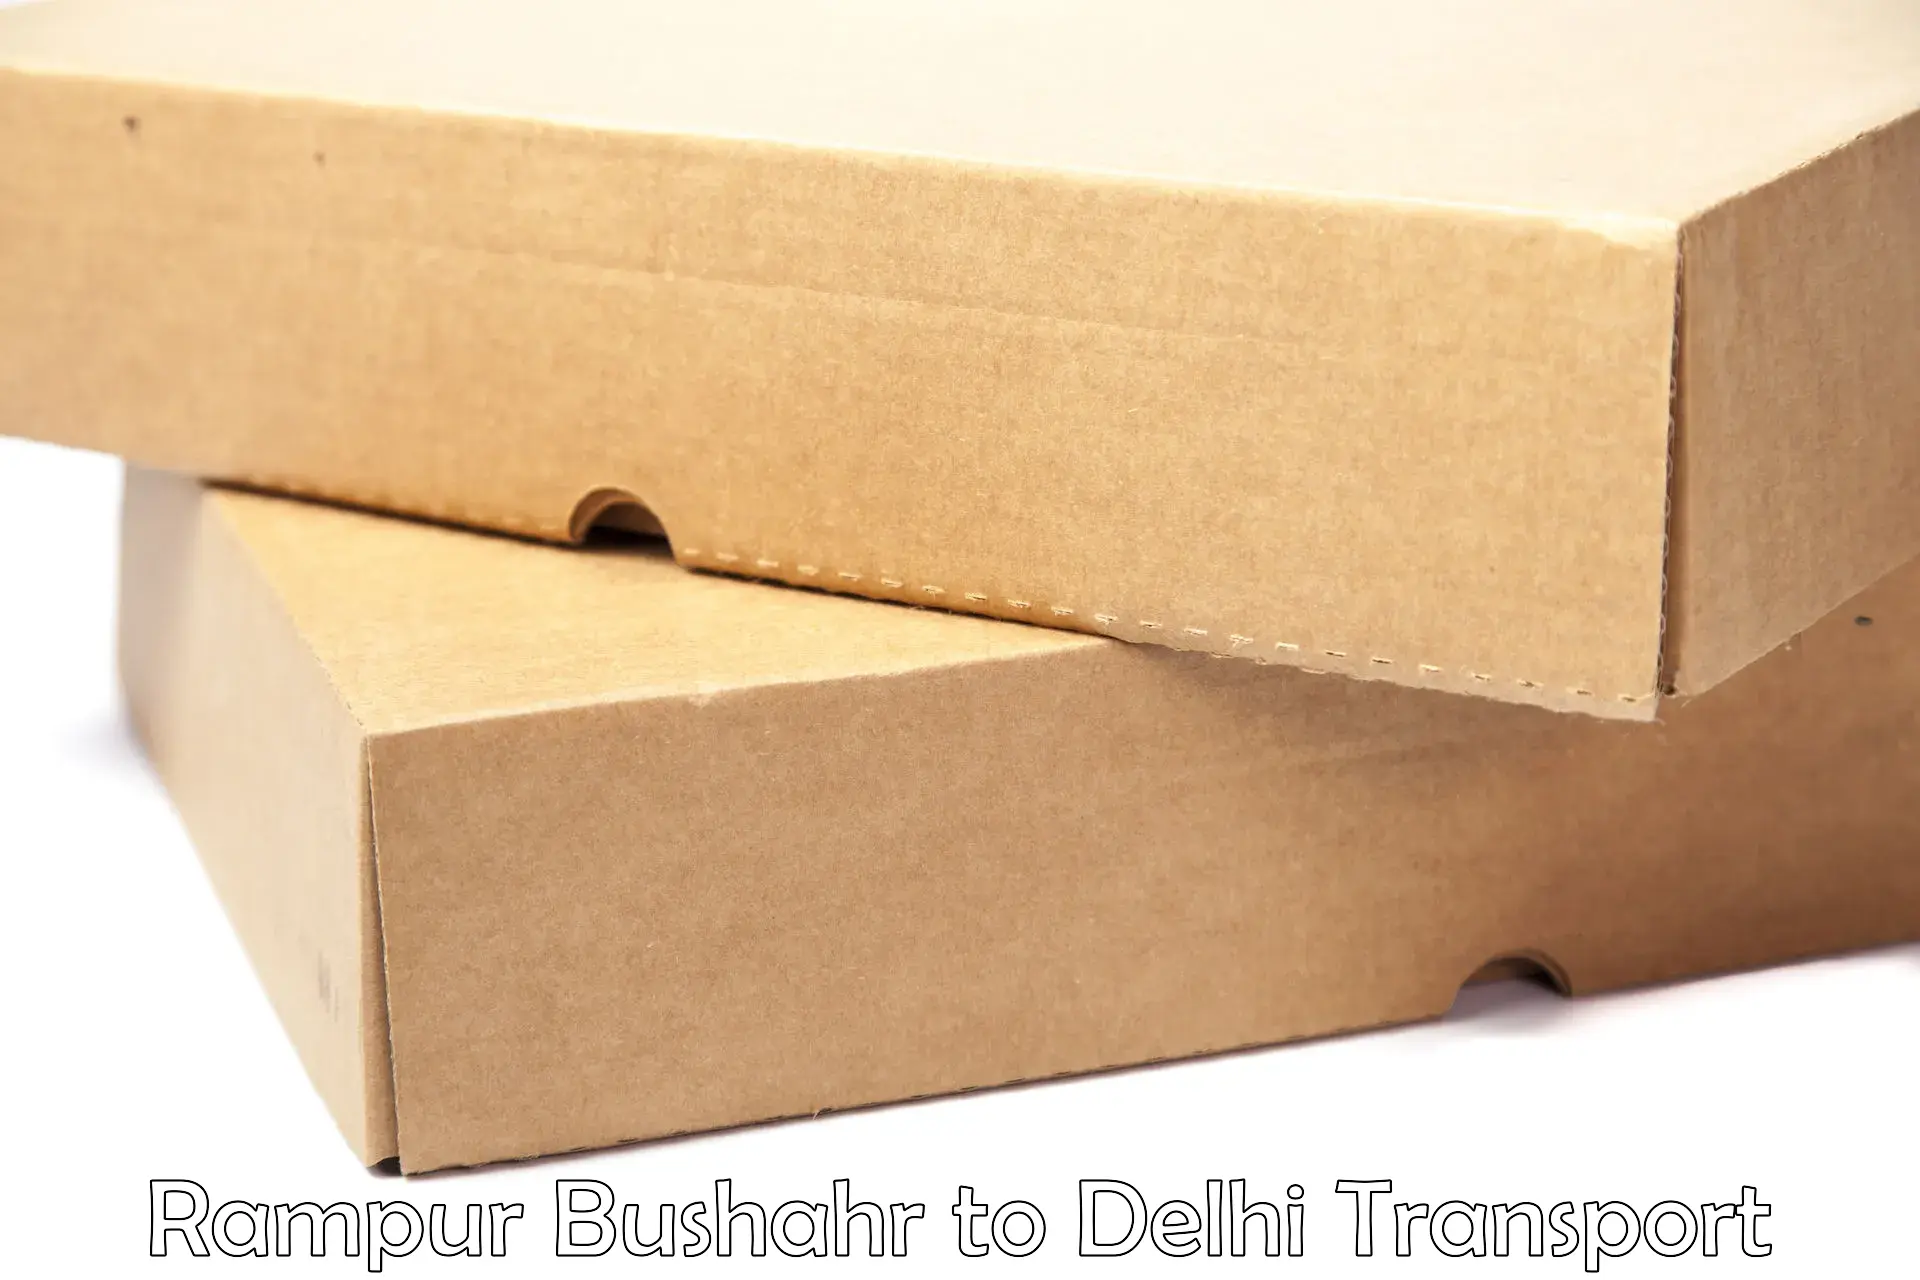 Furniture transport service Rampur Bushahr to IIT Delhi